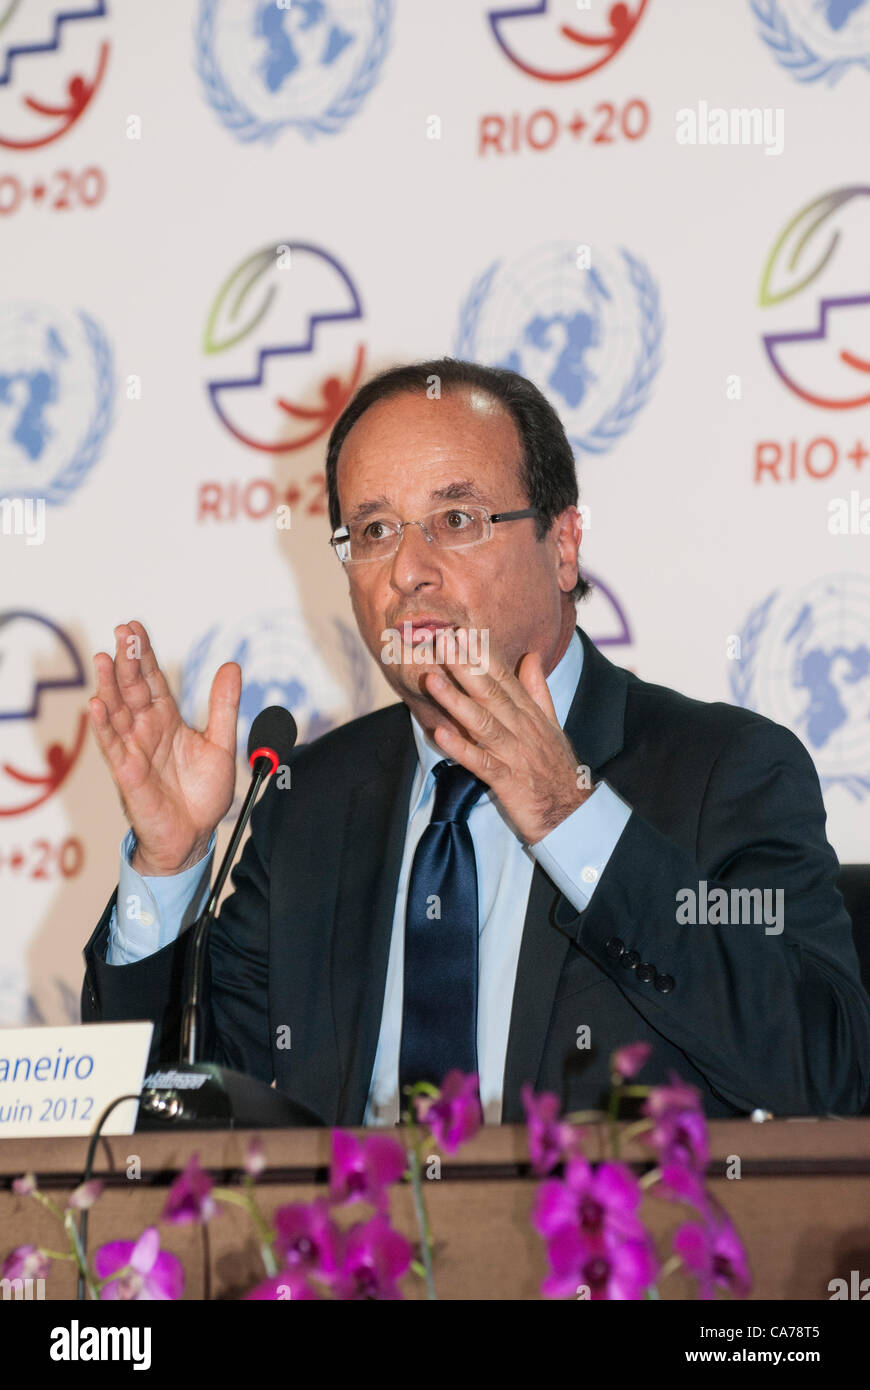 El presidente francés François Hollande da una conferencia de prensa en la Conferencia de las Naciones Unidas sobre Desarrollo Sostenible (Río+20), Río de Janeiro, Brasil, 20 de junio de 2012. Foto © Sue Cunningham. Foto de stock